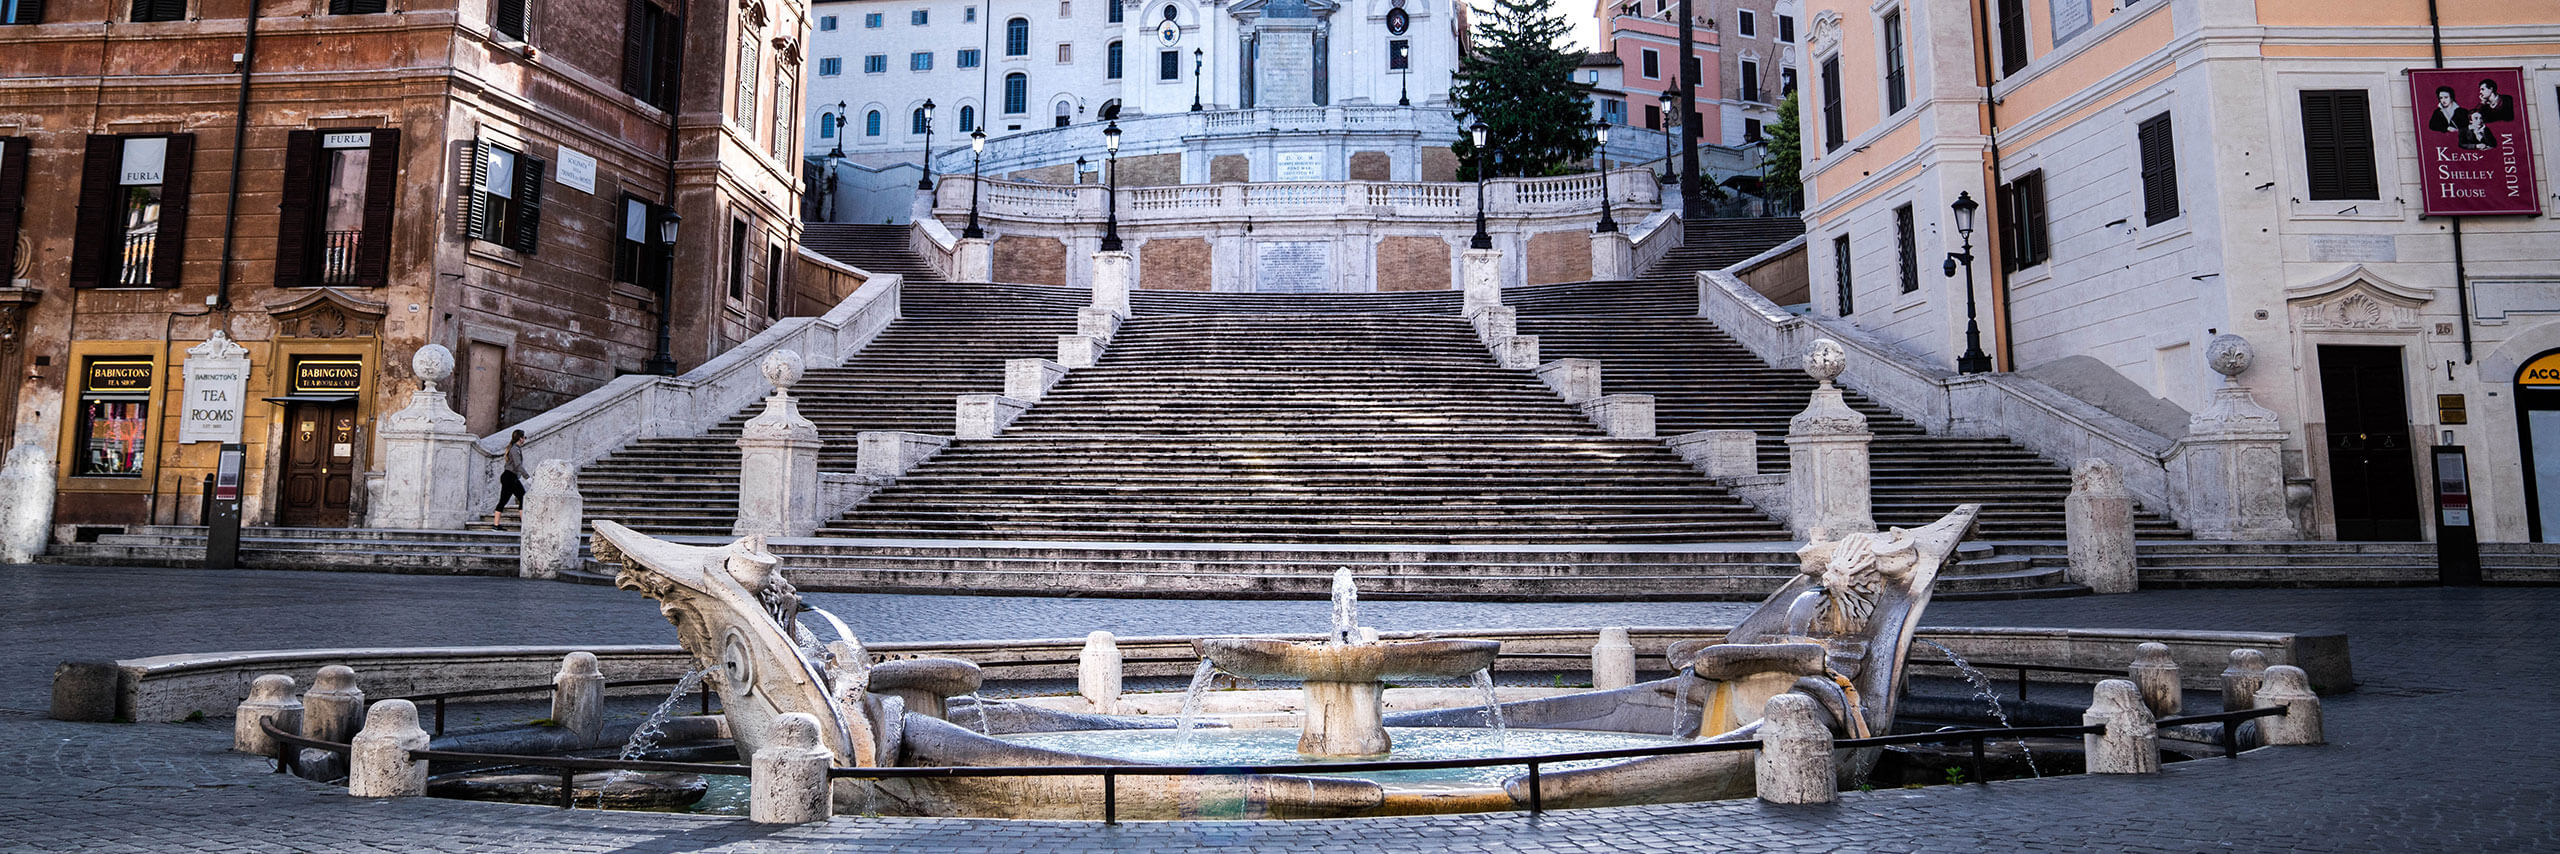 La Barcaccia fountain in Italy